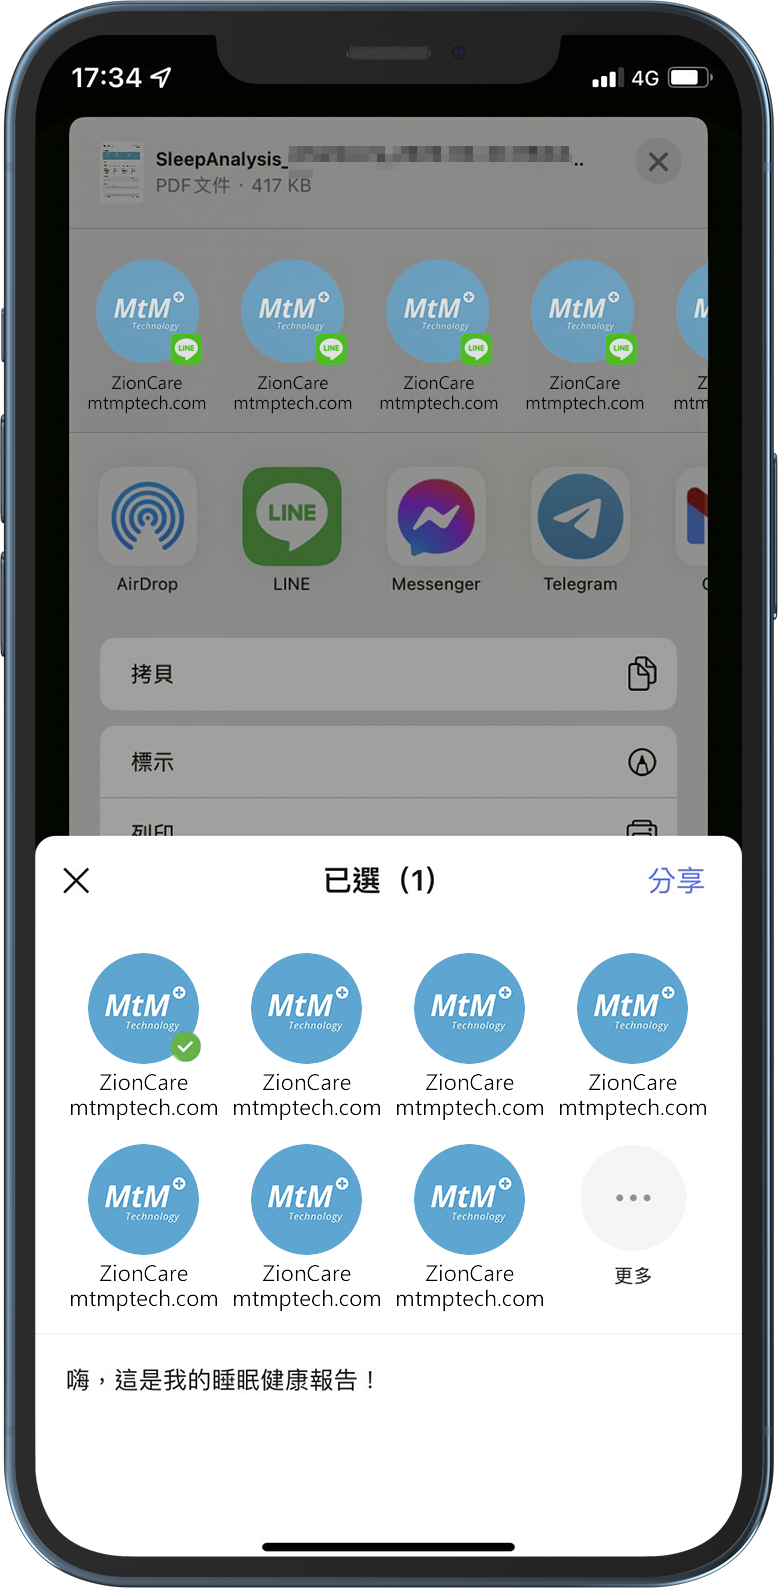 Share02 - MtM+ Technology